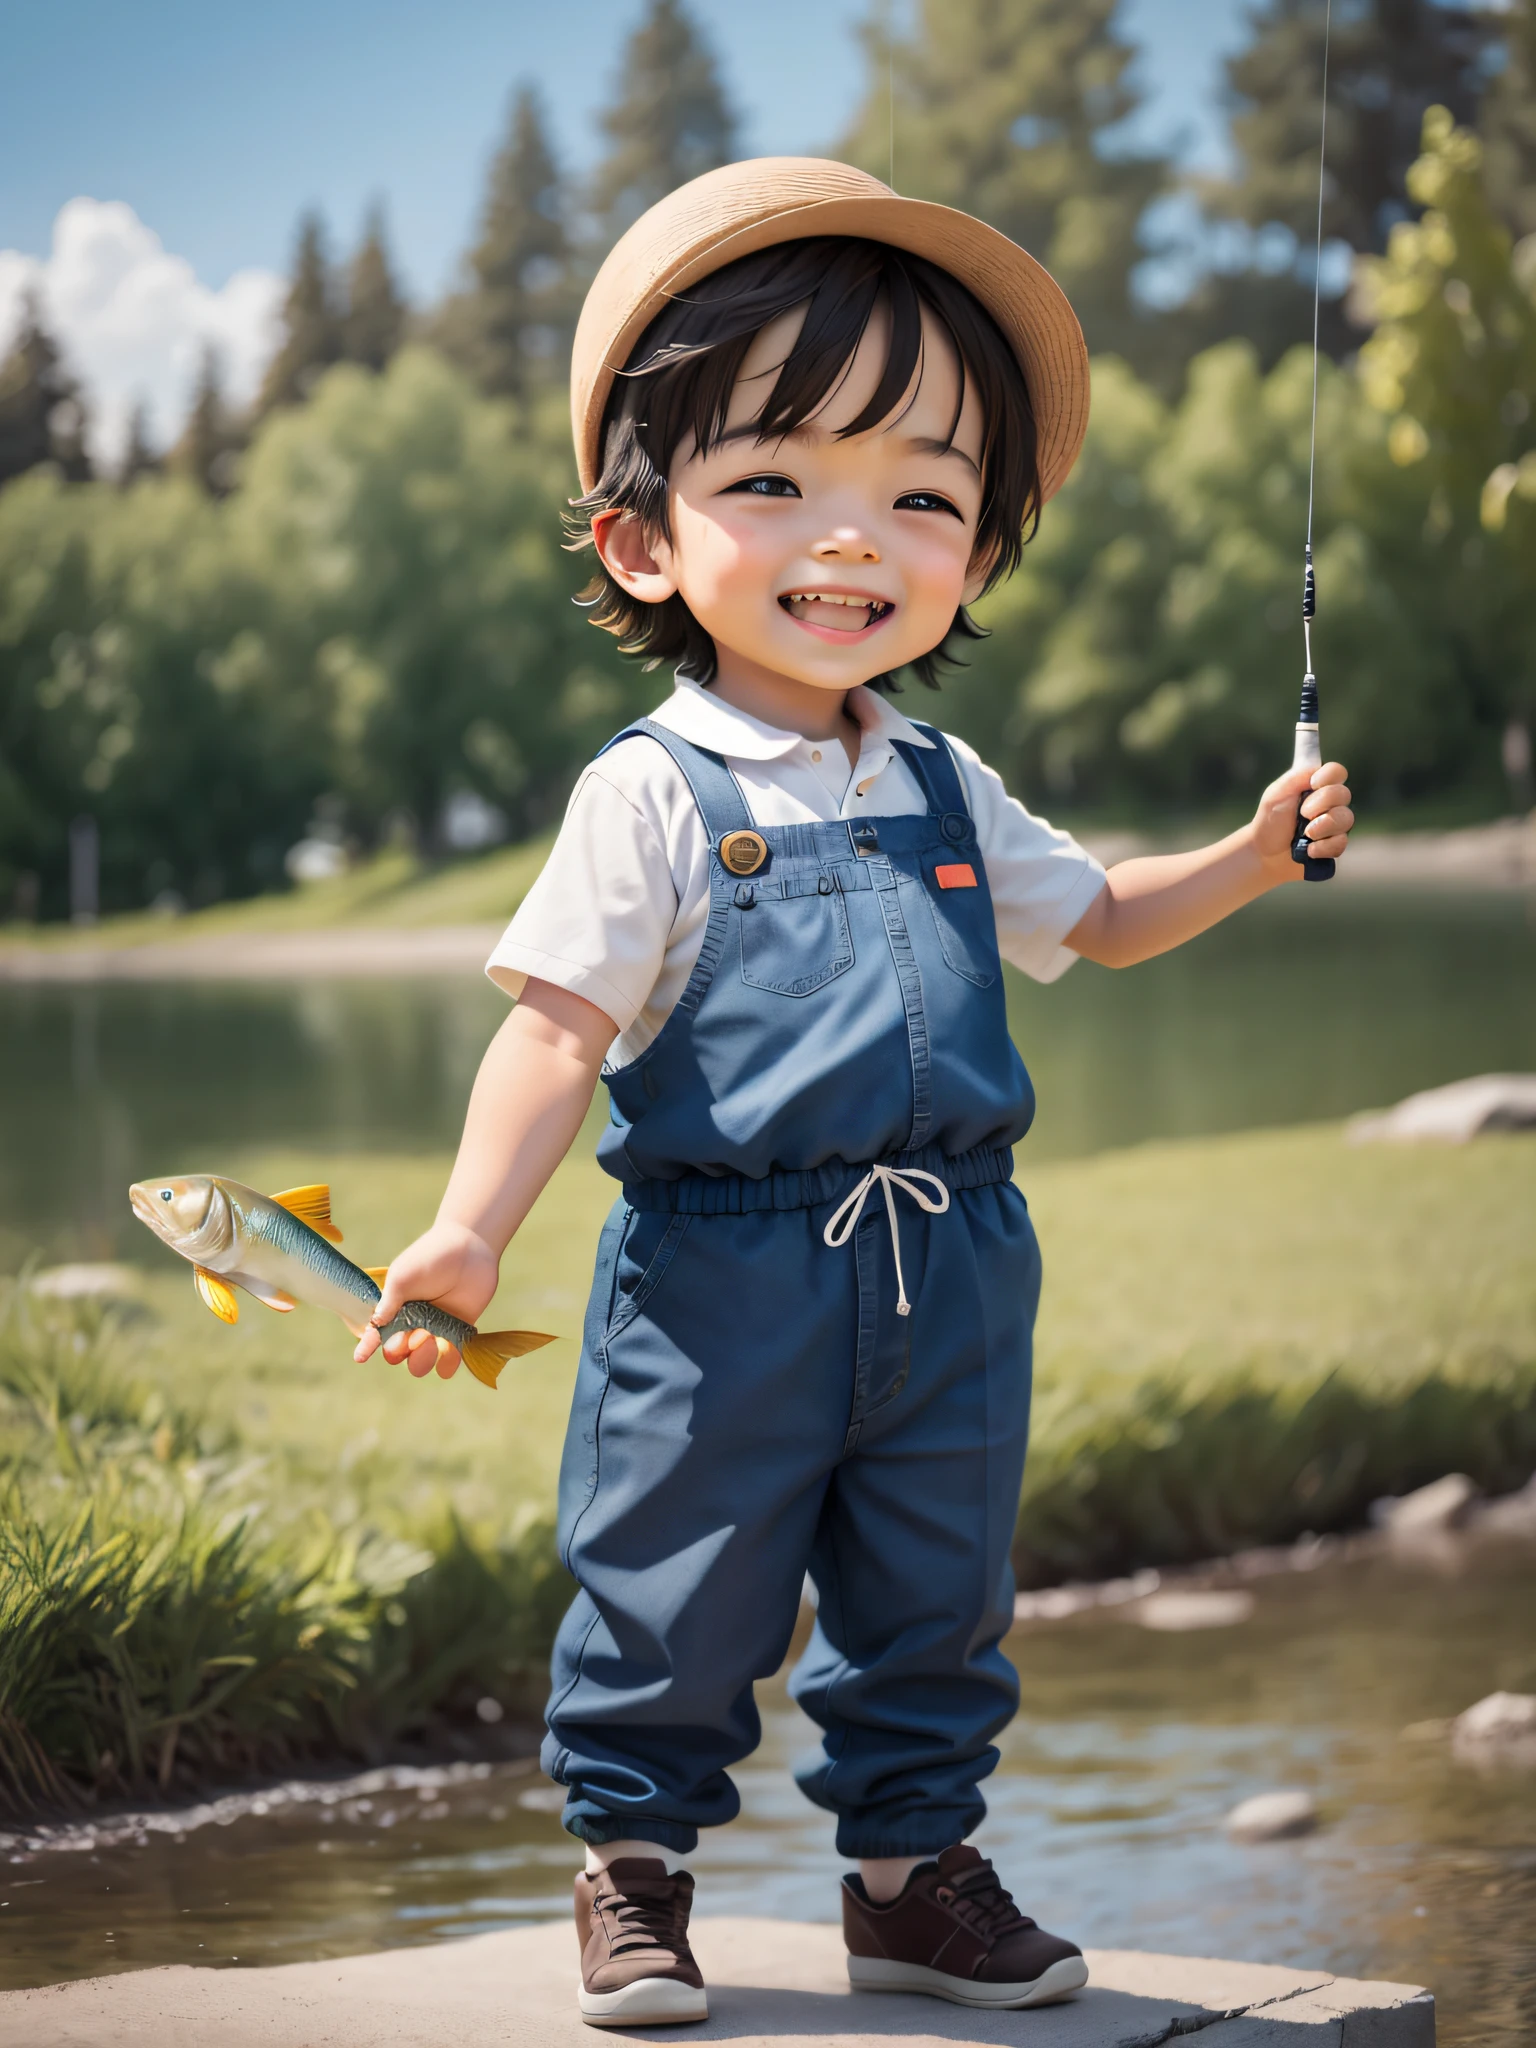 كان الصبي الصغير اللطيف سعيدًا بشكل خاص بصيد السمك